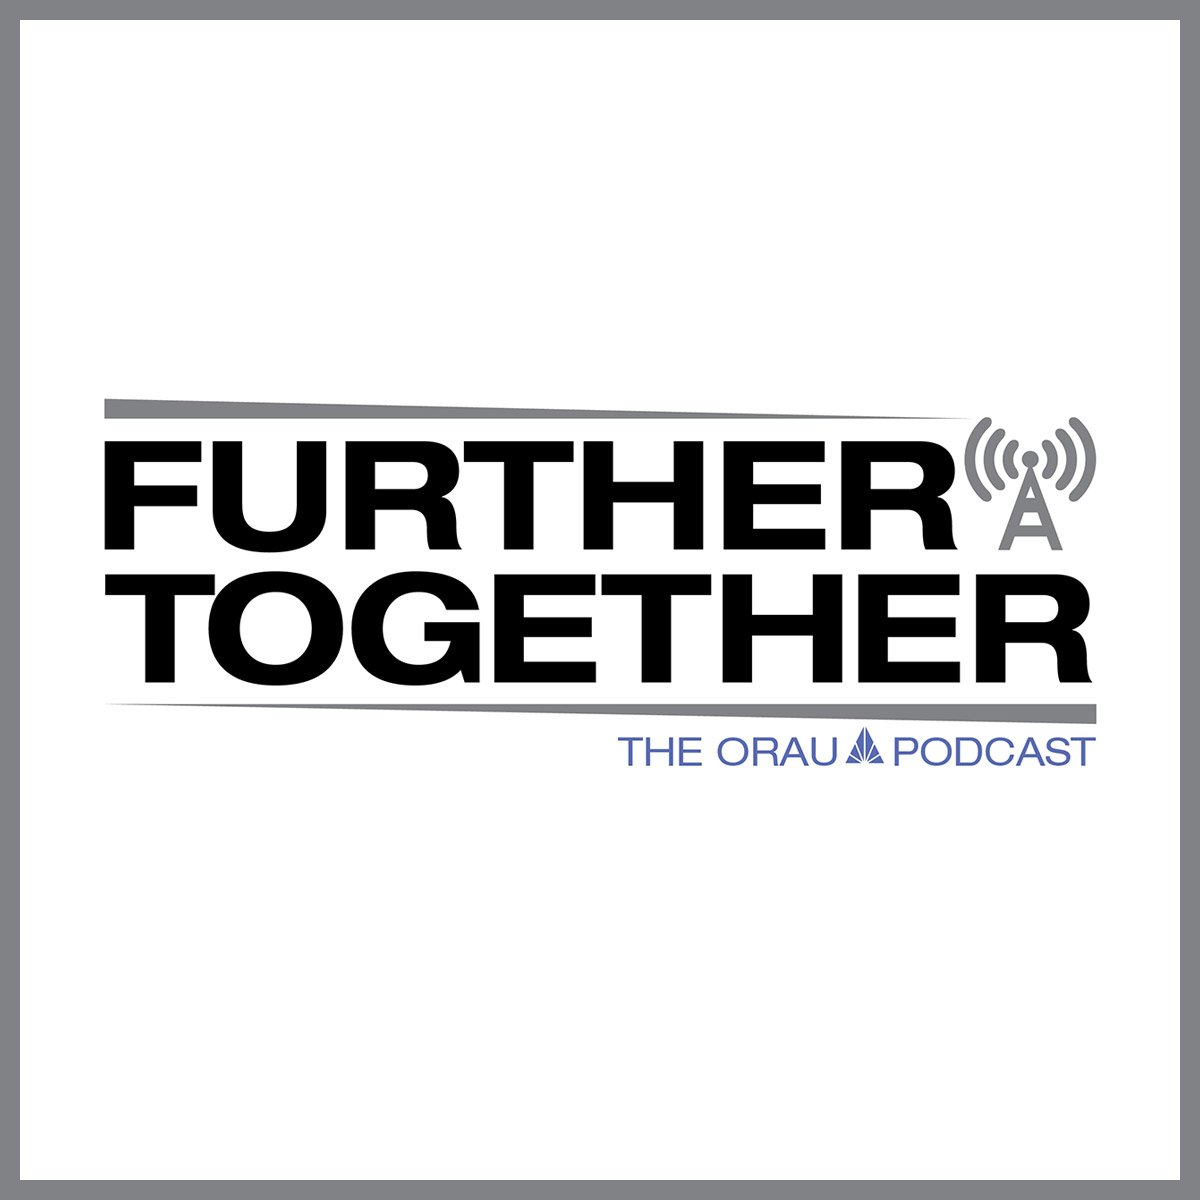 Further Together podcast logo